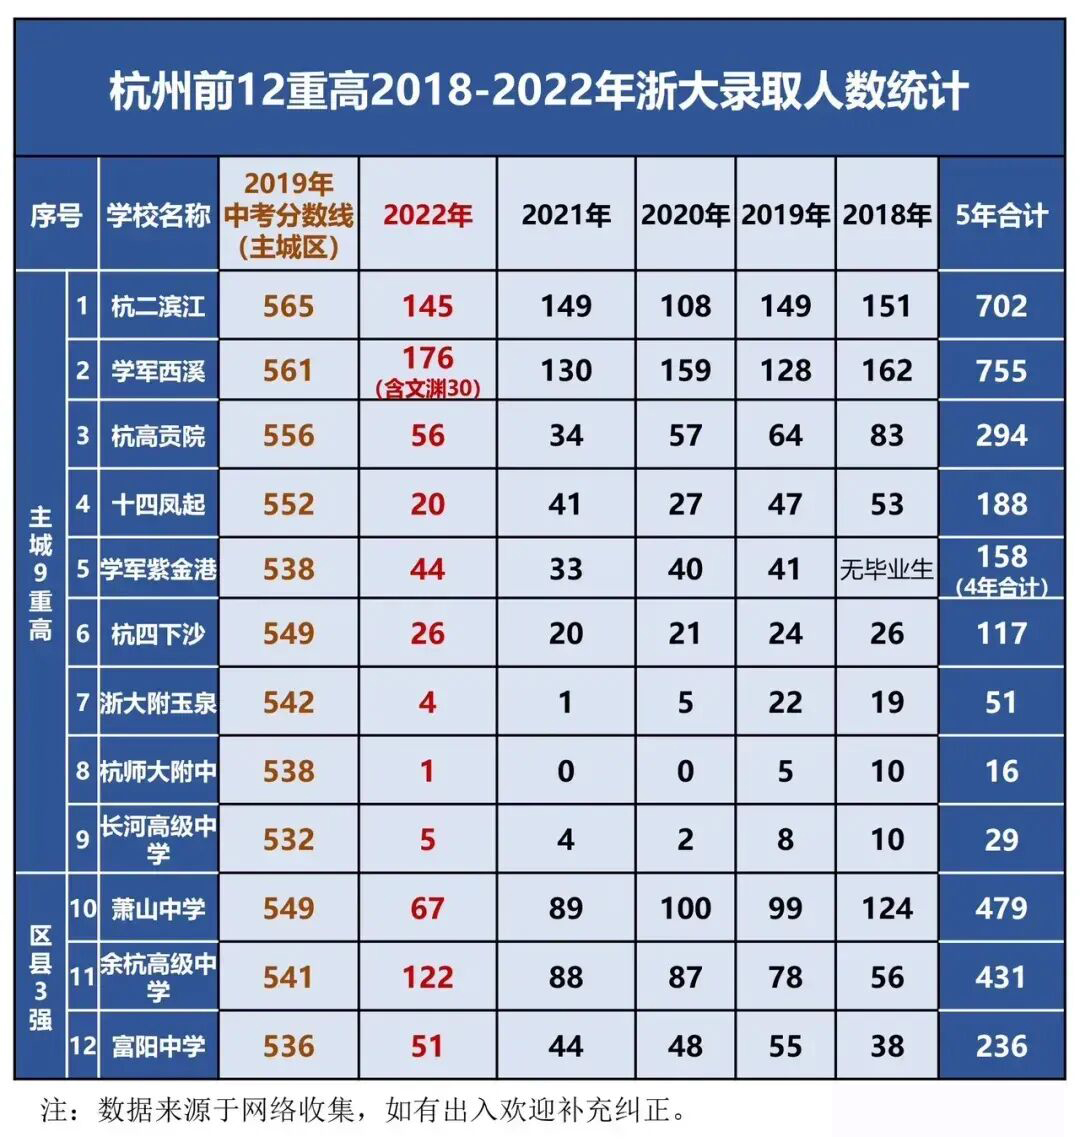 杭州市教育局办公室关于2023年普通高中中外合作办学项目面向市区招生工作的通知